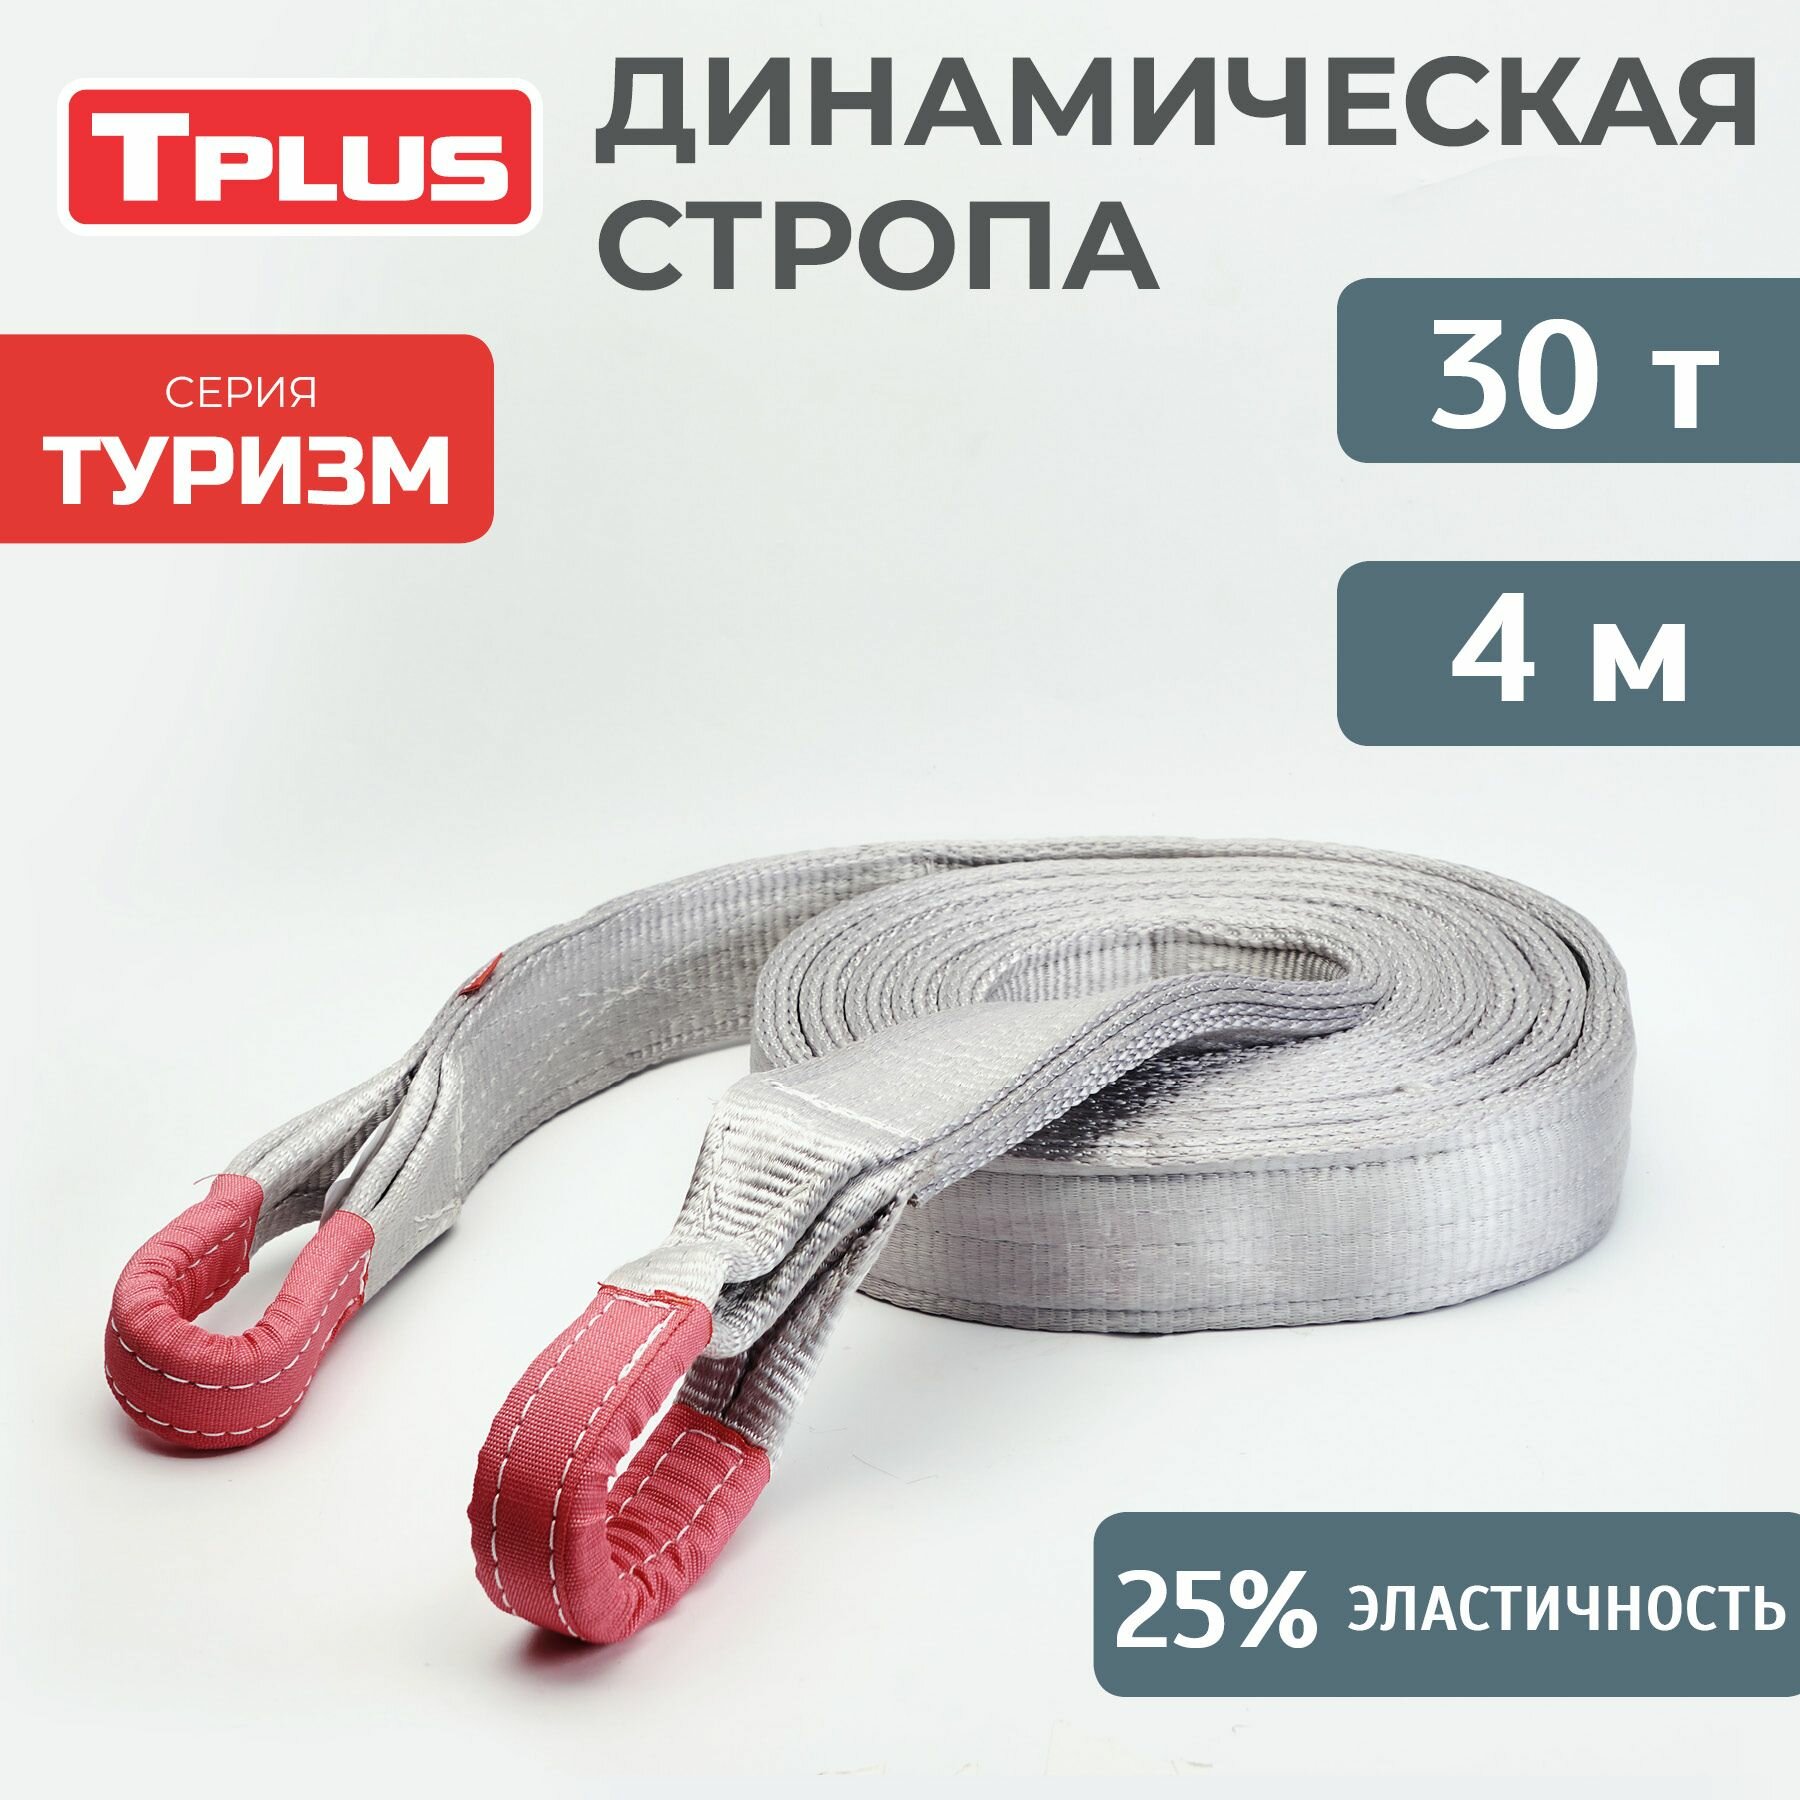 Динамическая стропа 30 т 4 м серия "Туризм", рывковый трос для автомобиля, Tplus